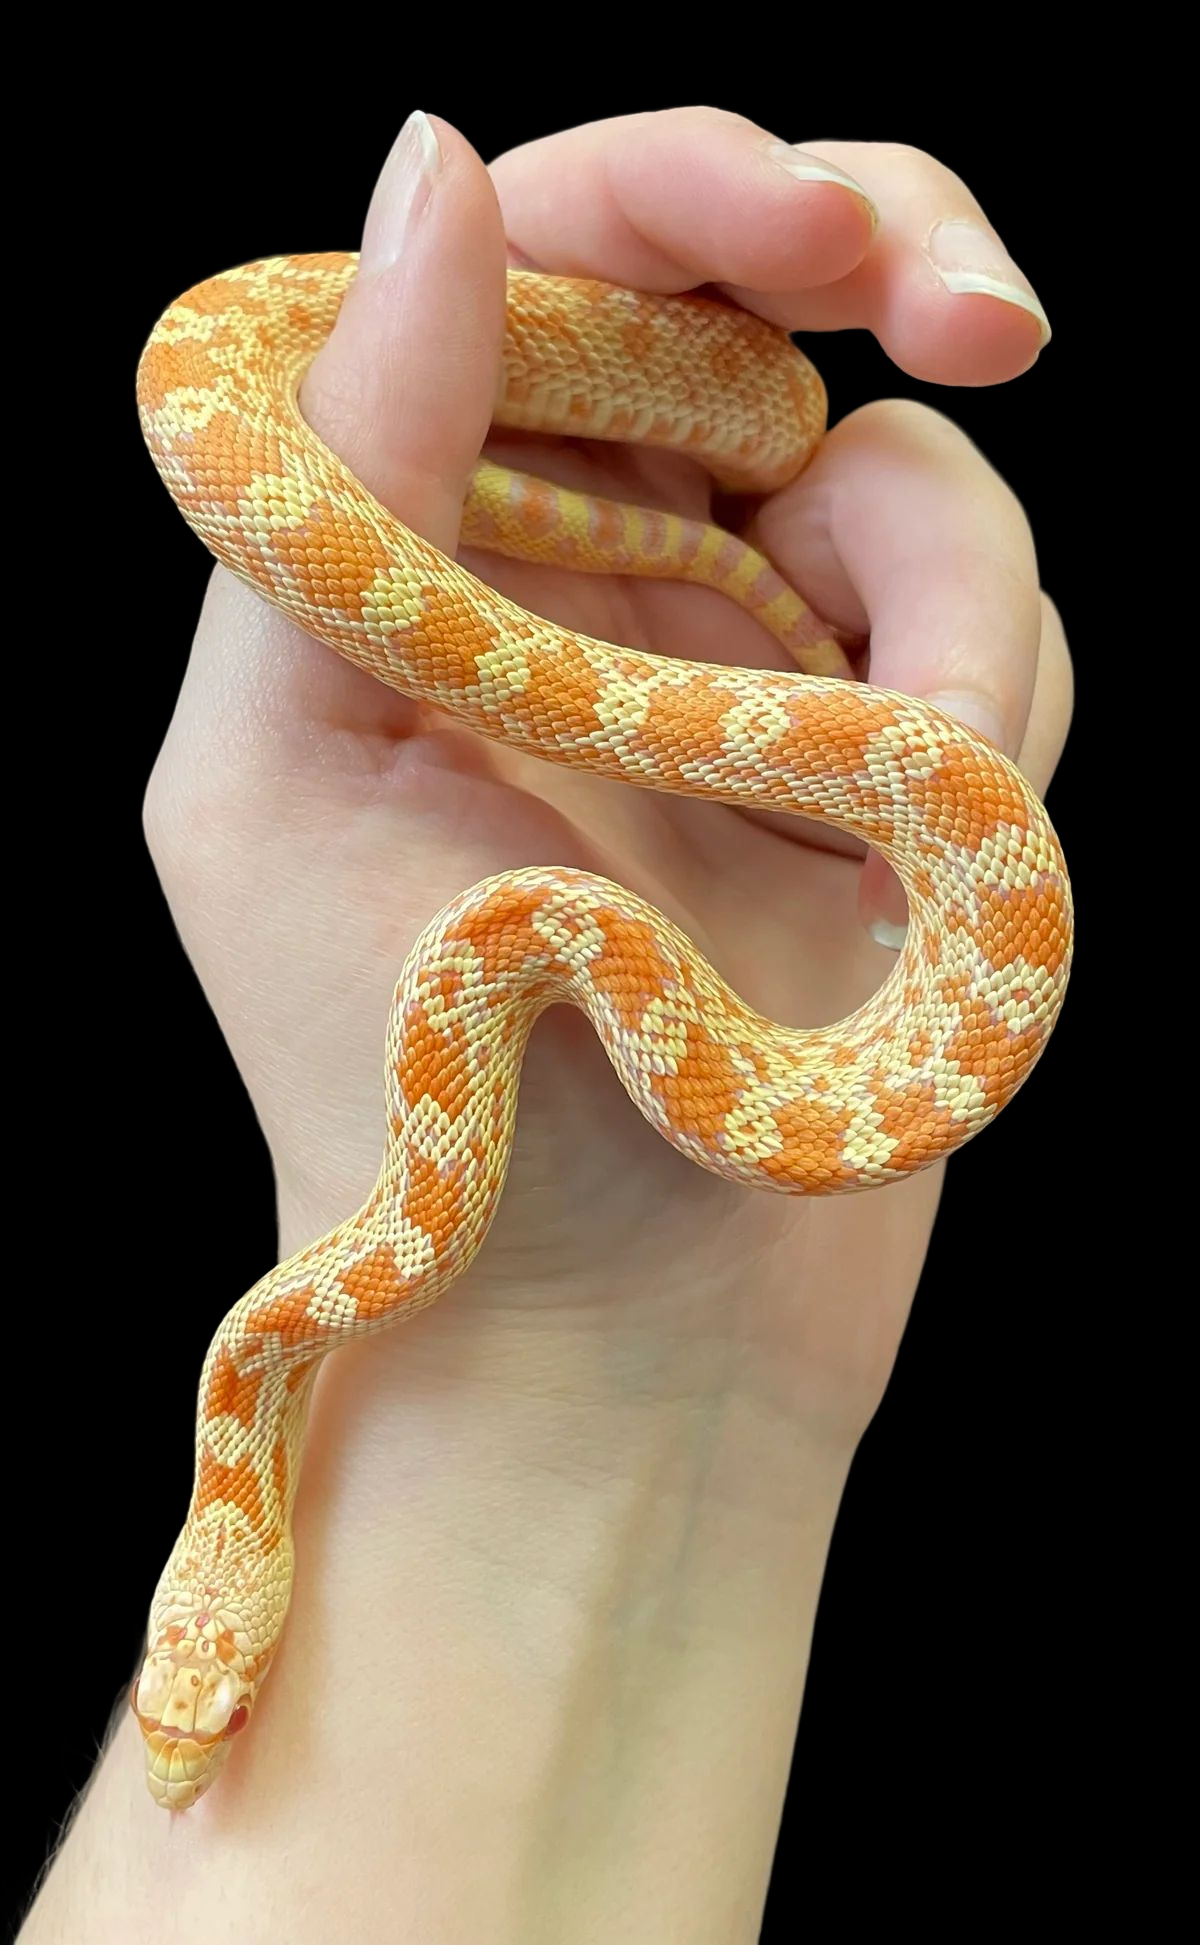 albino gopher snake